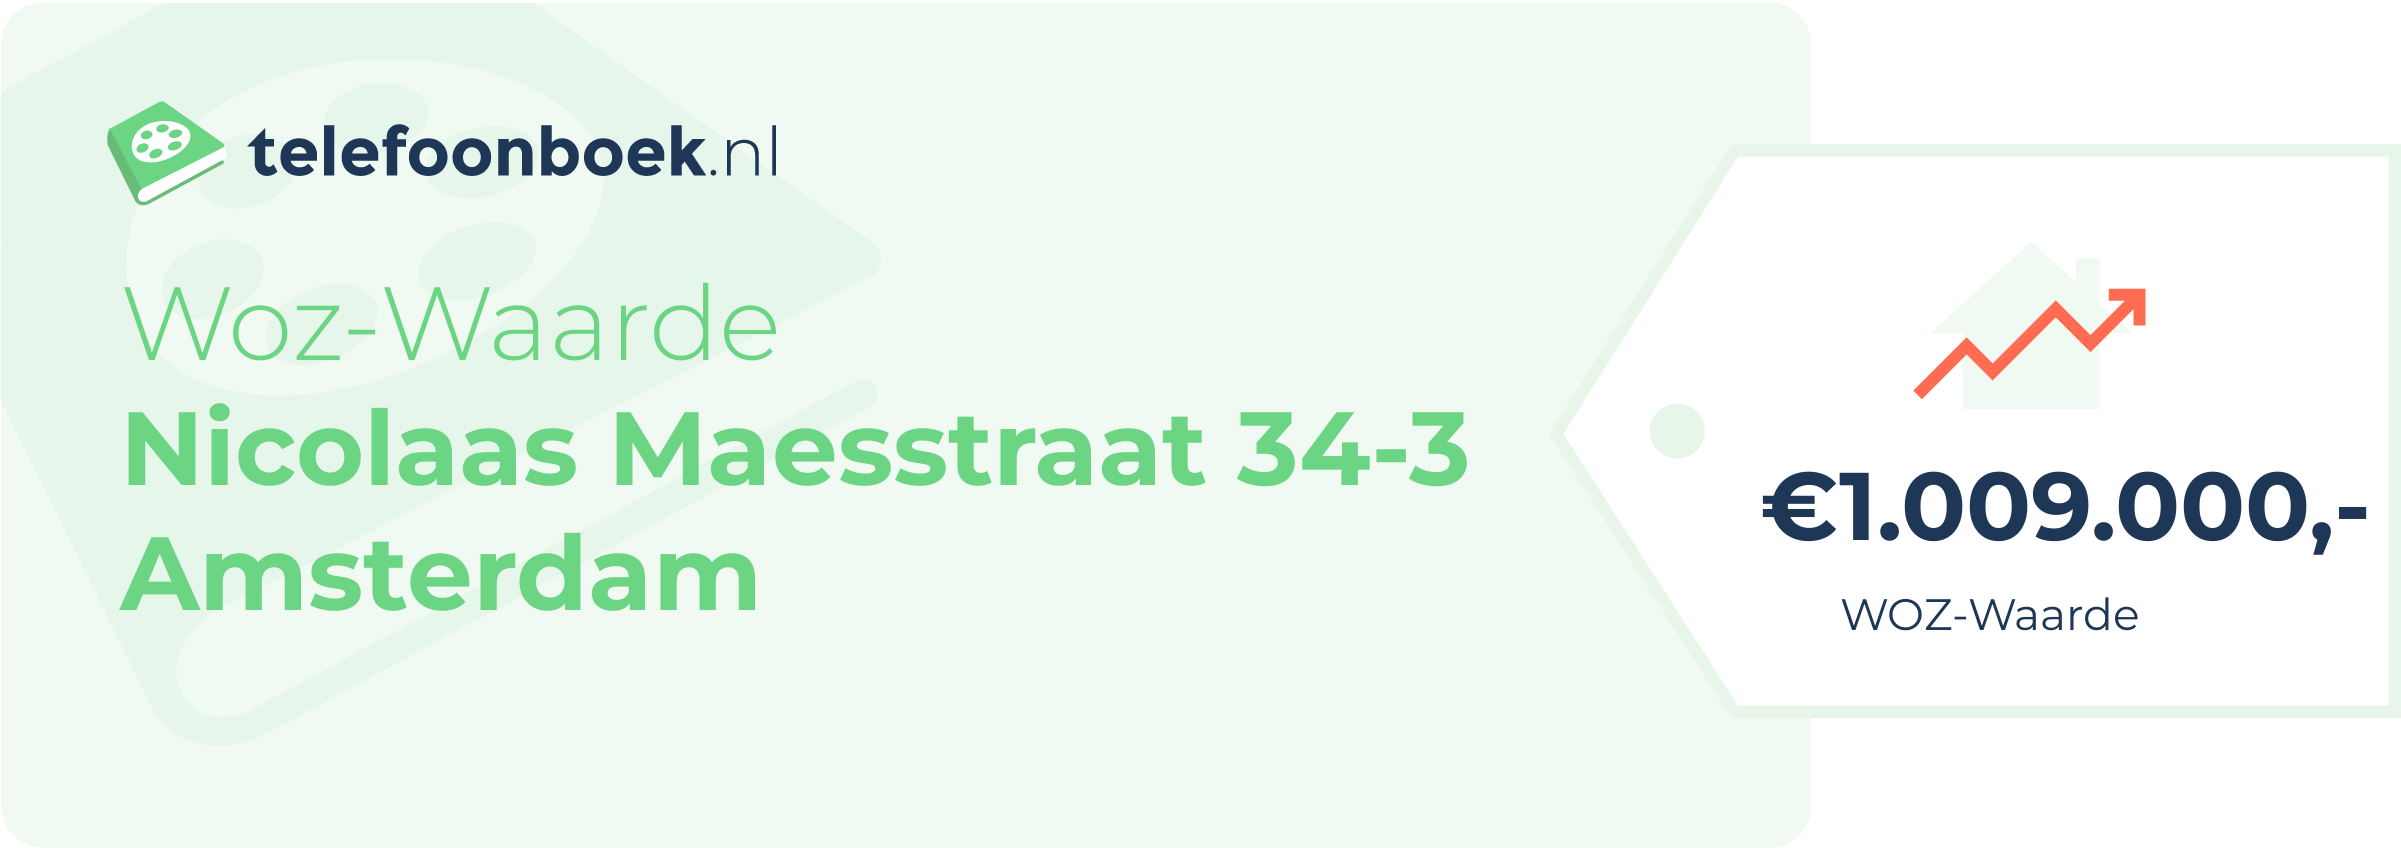 WOZ-waarde Nicolaas Maesstraat 34-3 Amsterdam